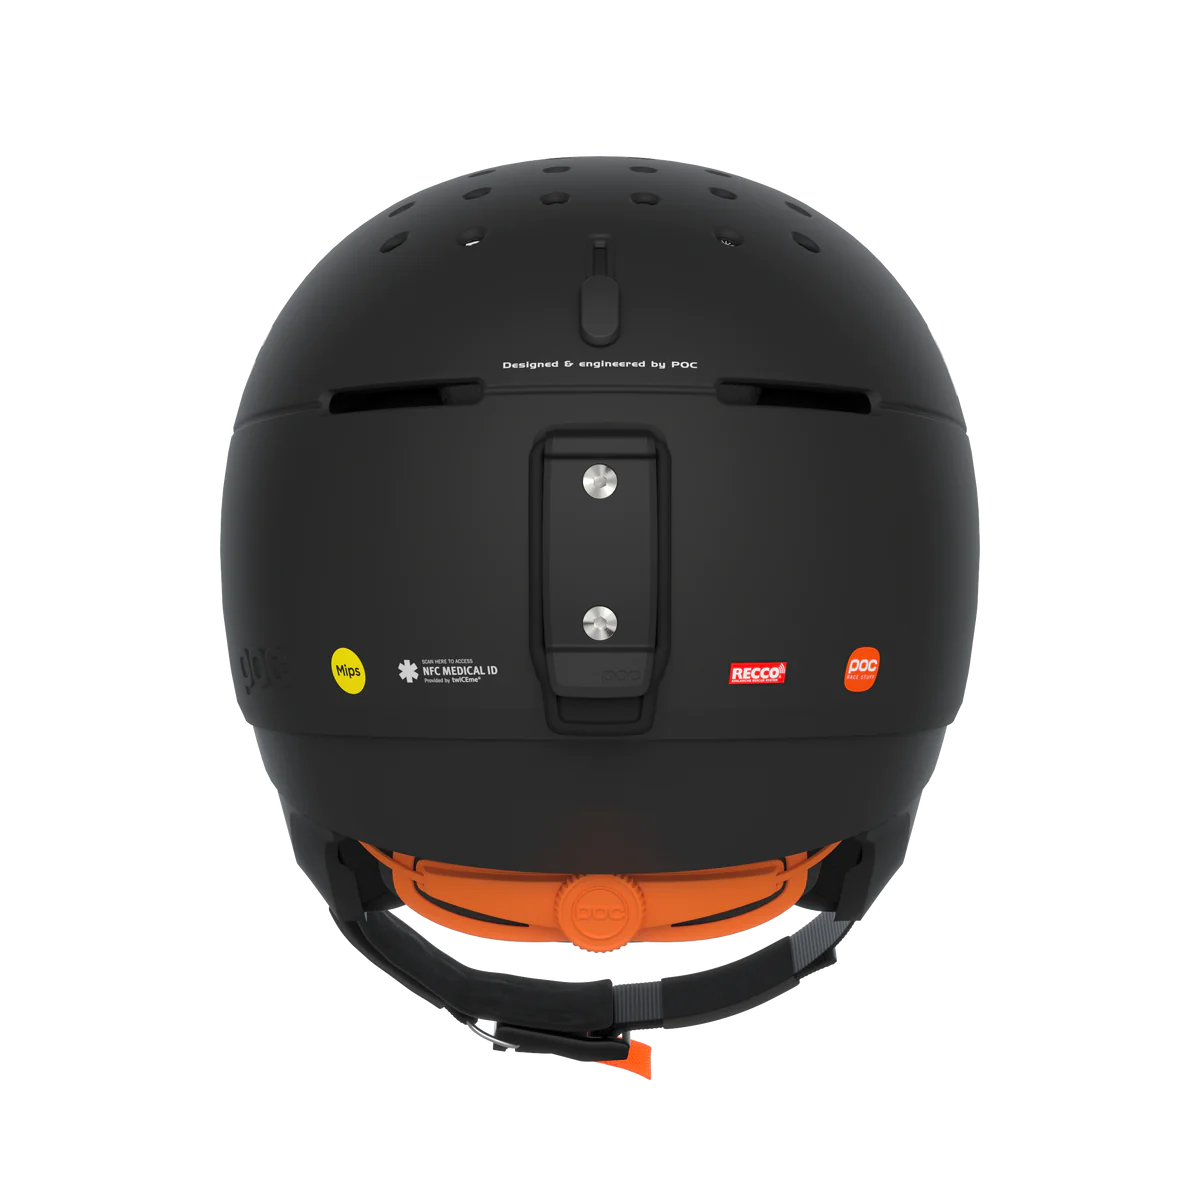 POC Meninx RS MIPS Helmet